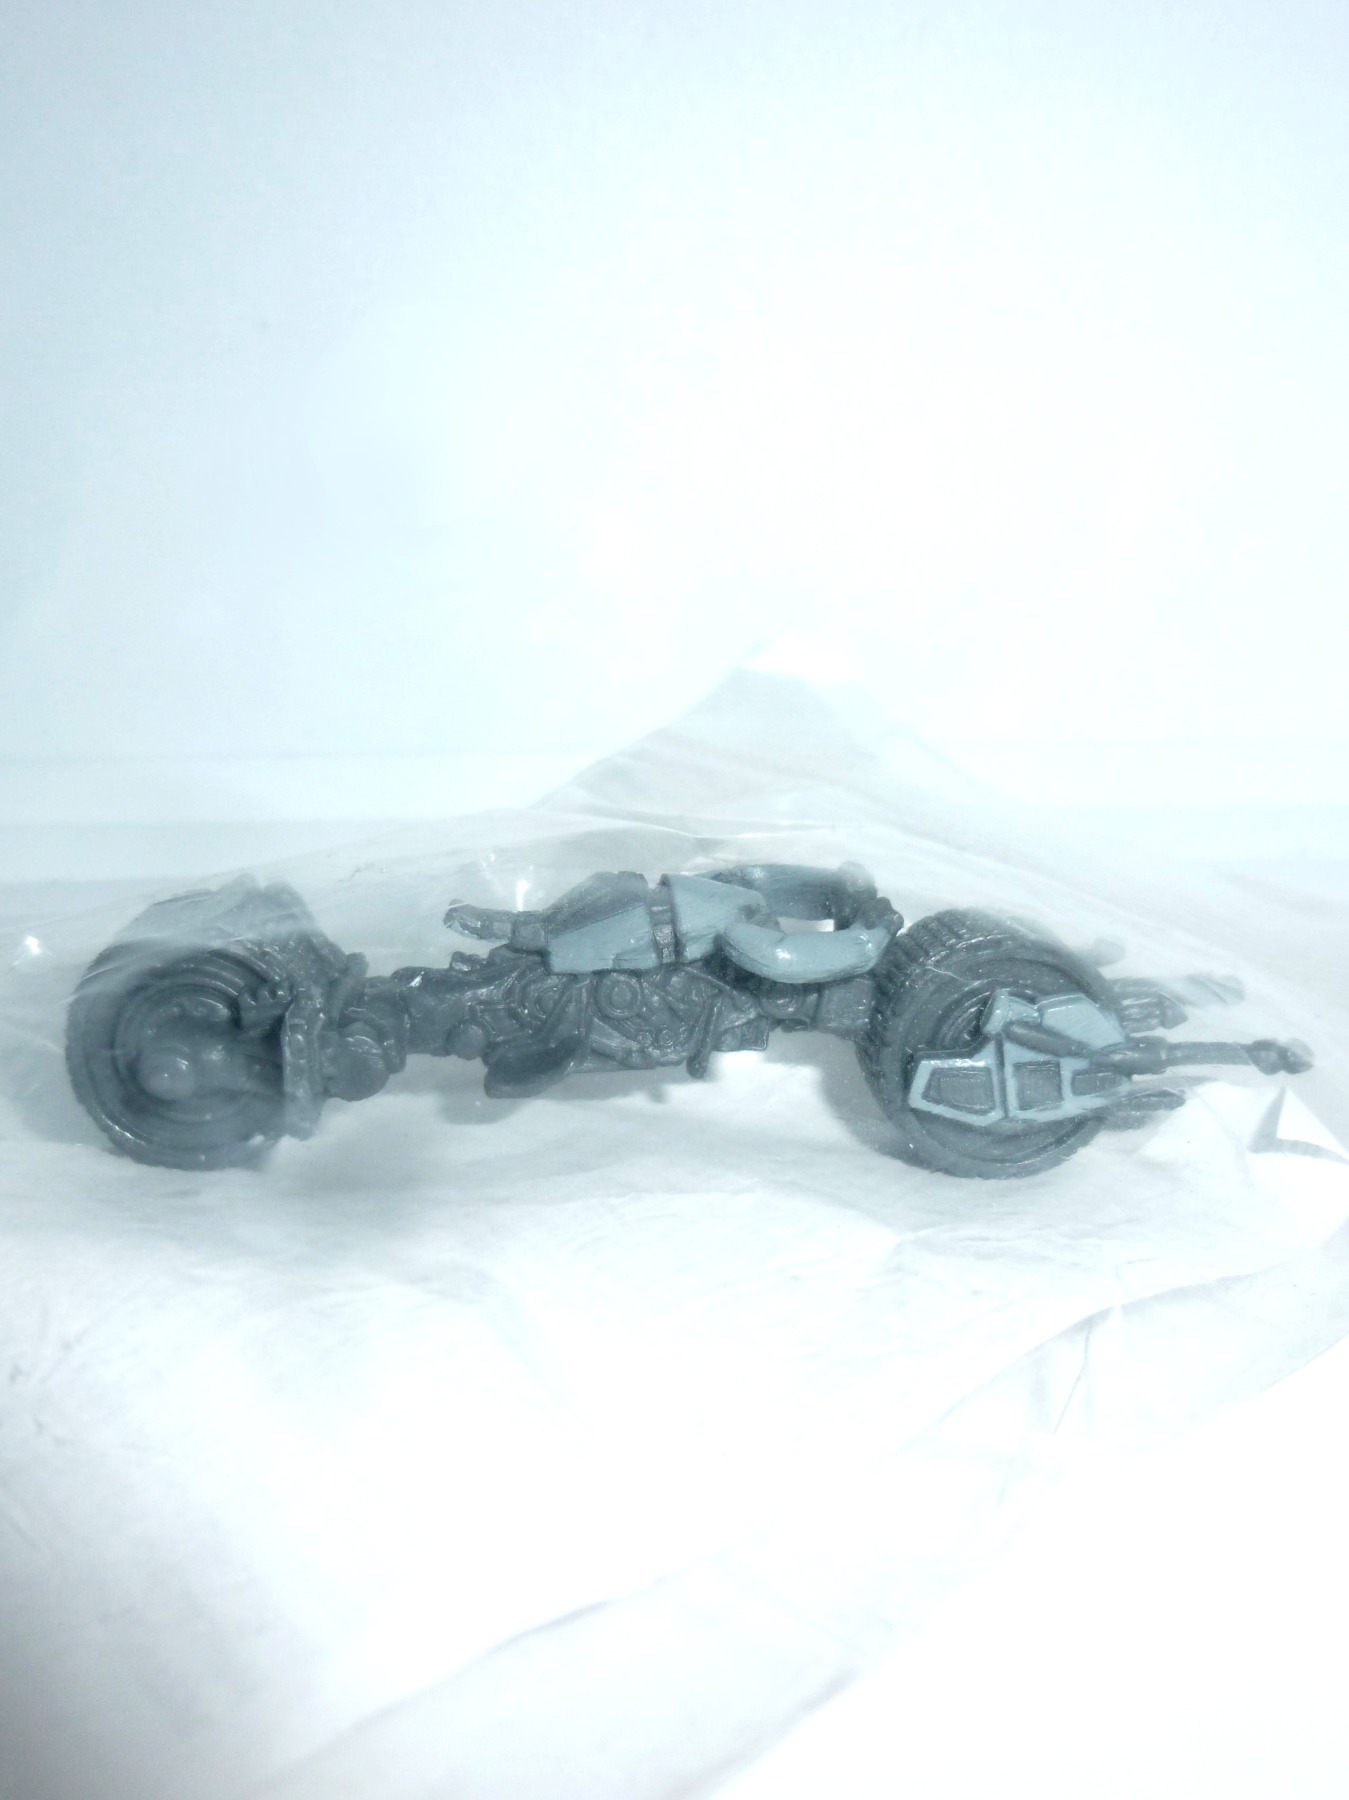 Batman Motorrad Model 2008